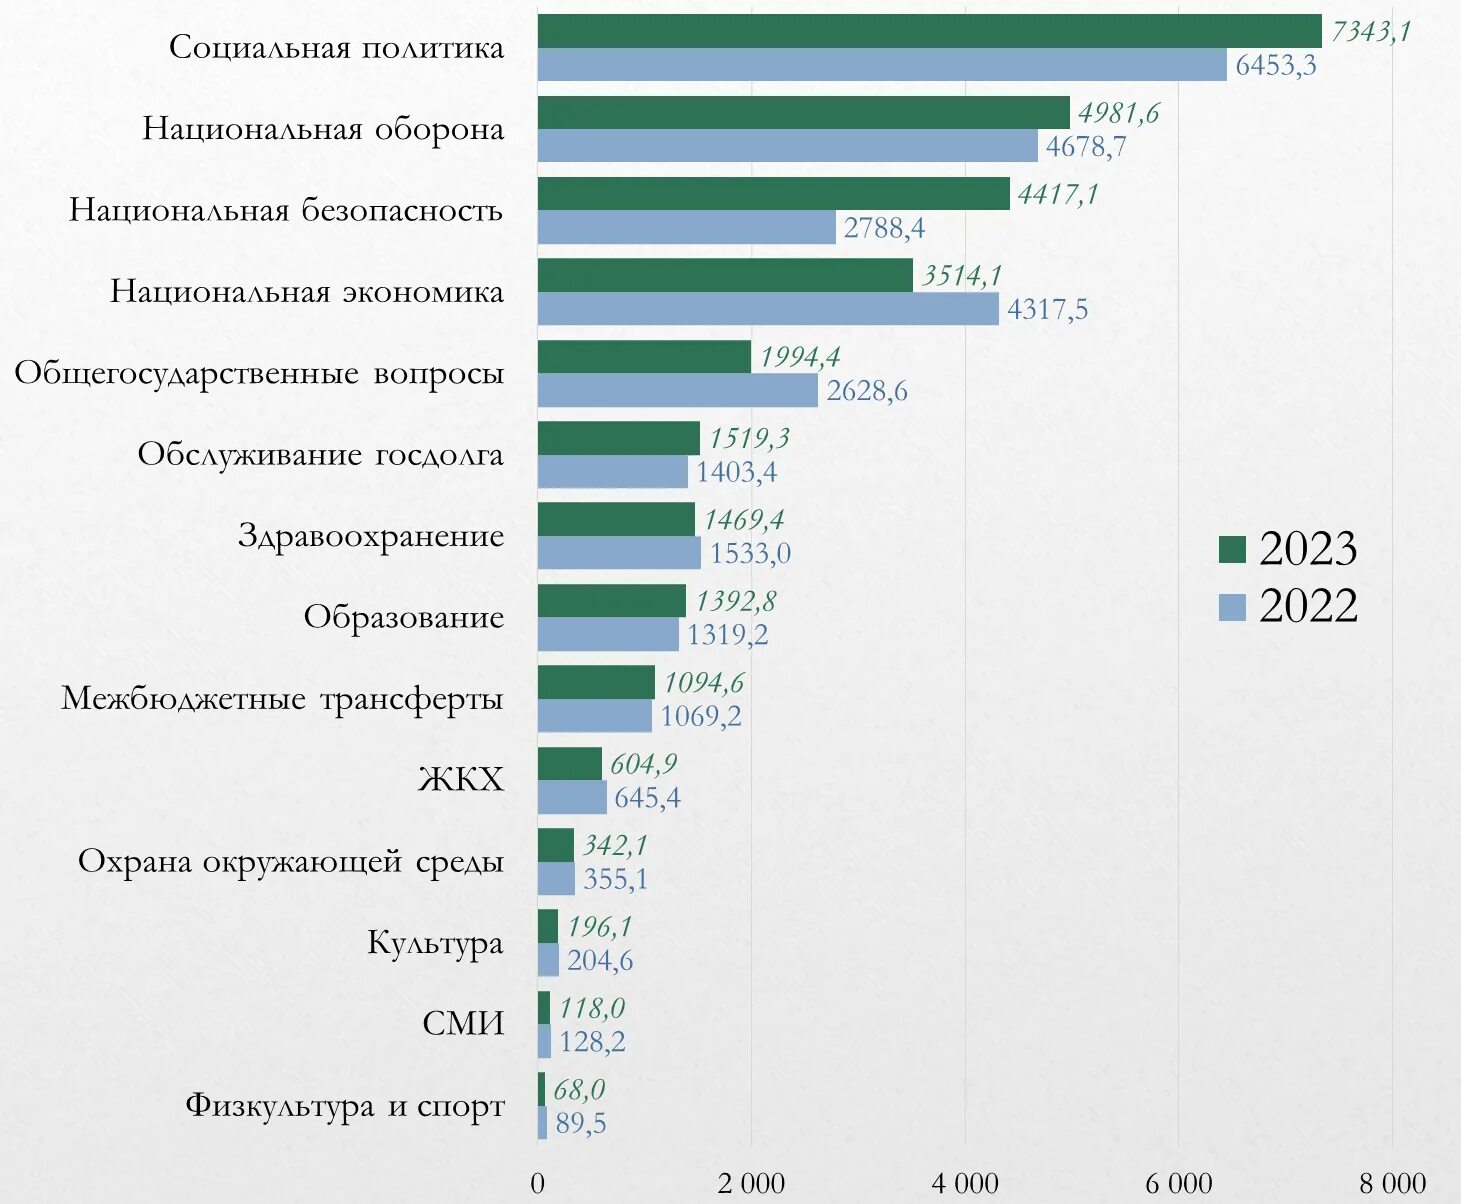 Доходы бюджета за 2023 год. Бюджет России в 2022-2023. Структура бюджета РФ на 2023. Бюджет России за 2023 год. Военный бюджет РФ на 2023.